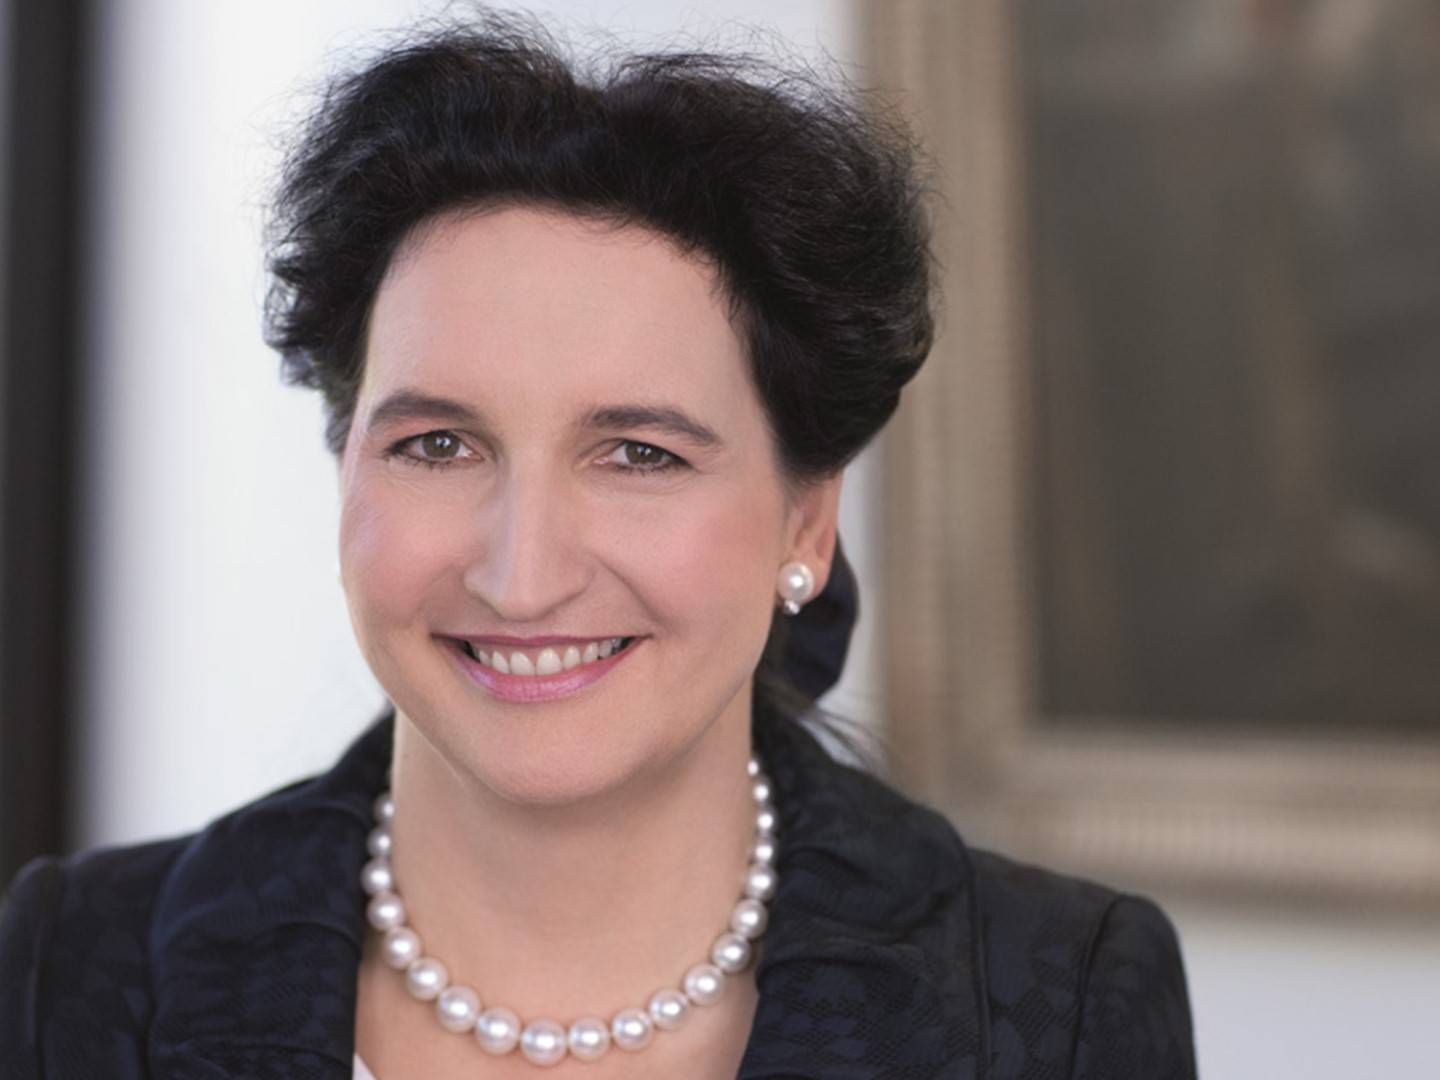 Carola von Schmettow, Sprecherin des Vorstands bei der HSBC Deutschland. | Foto: HSBC Trinkaus & Burkhardt/Jochen Manz/dpa